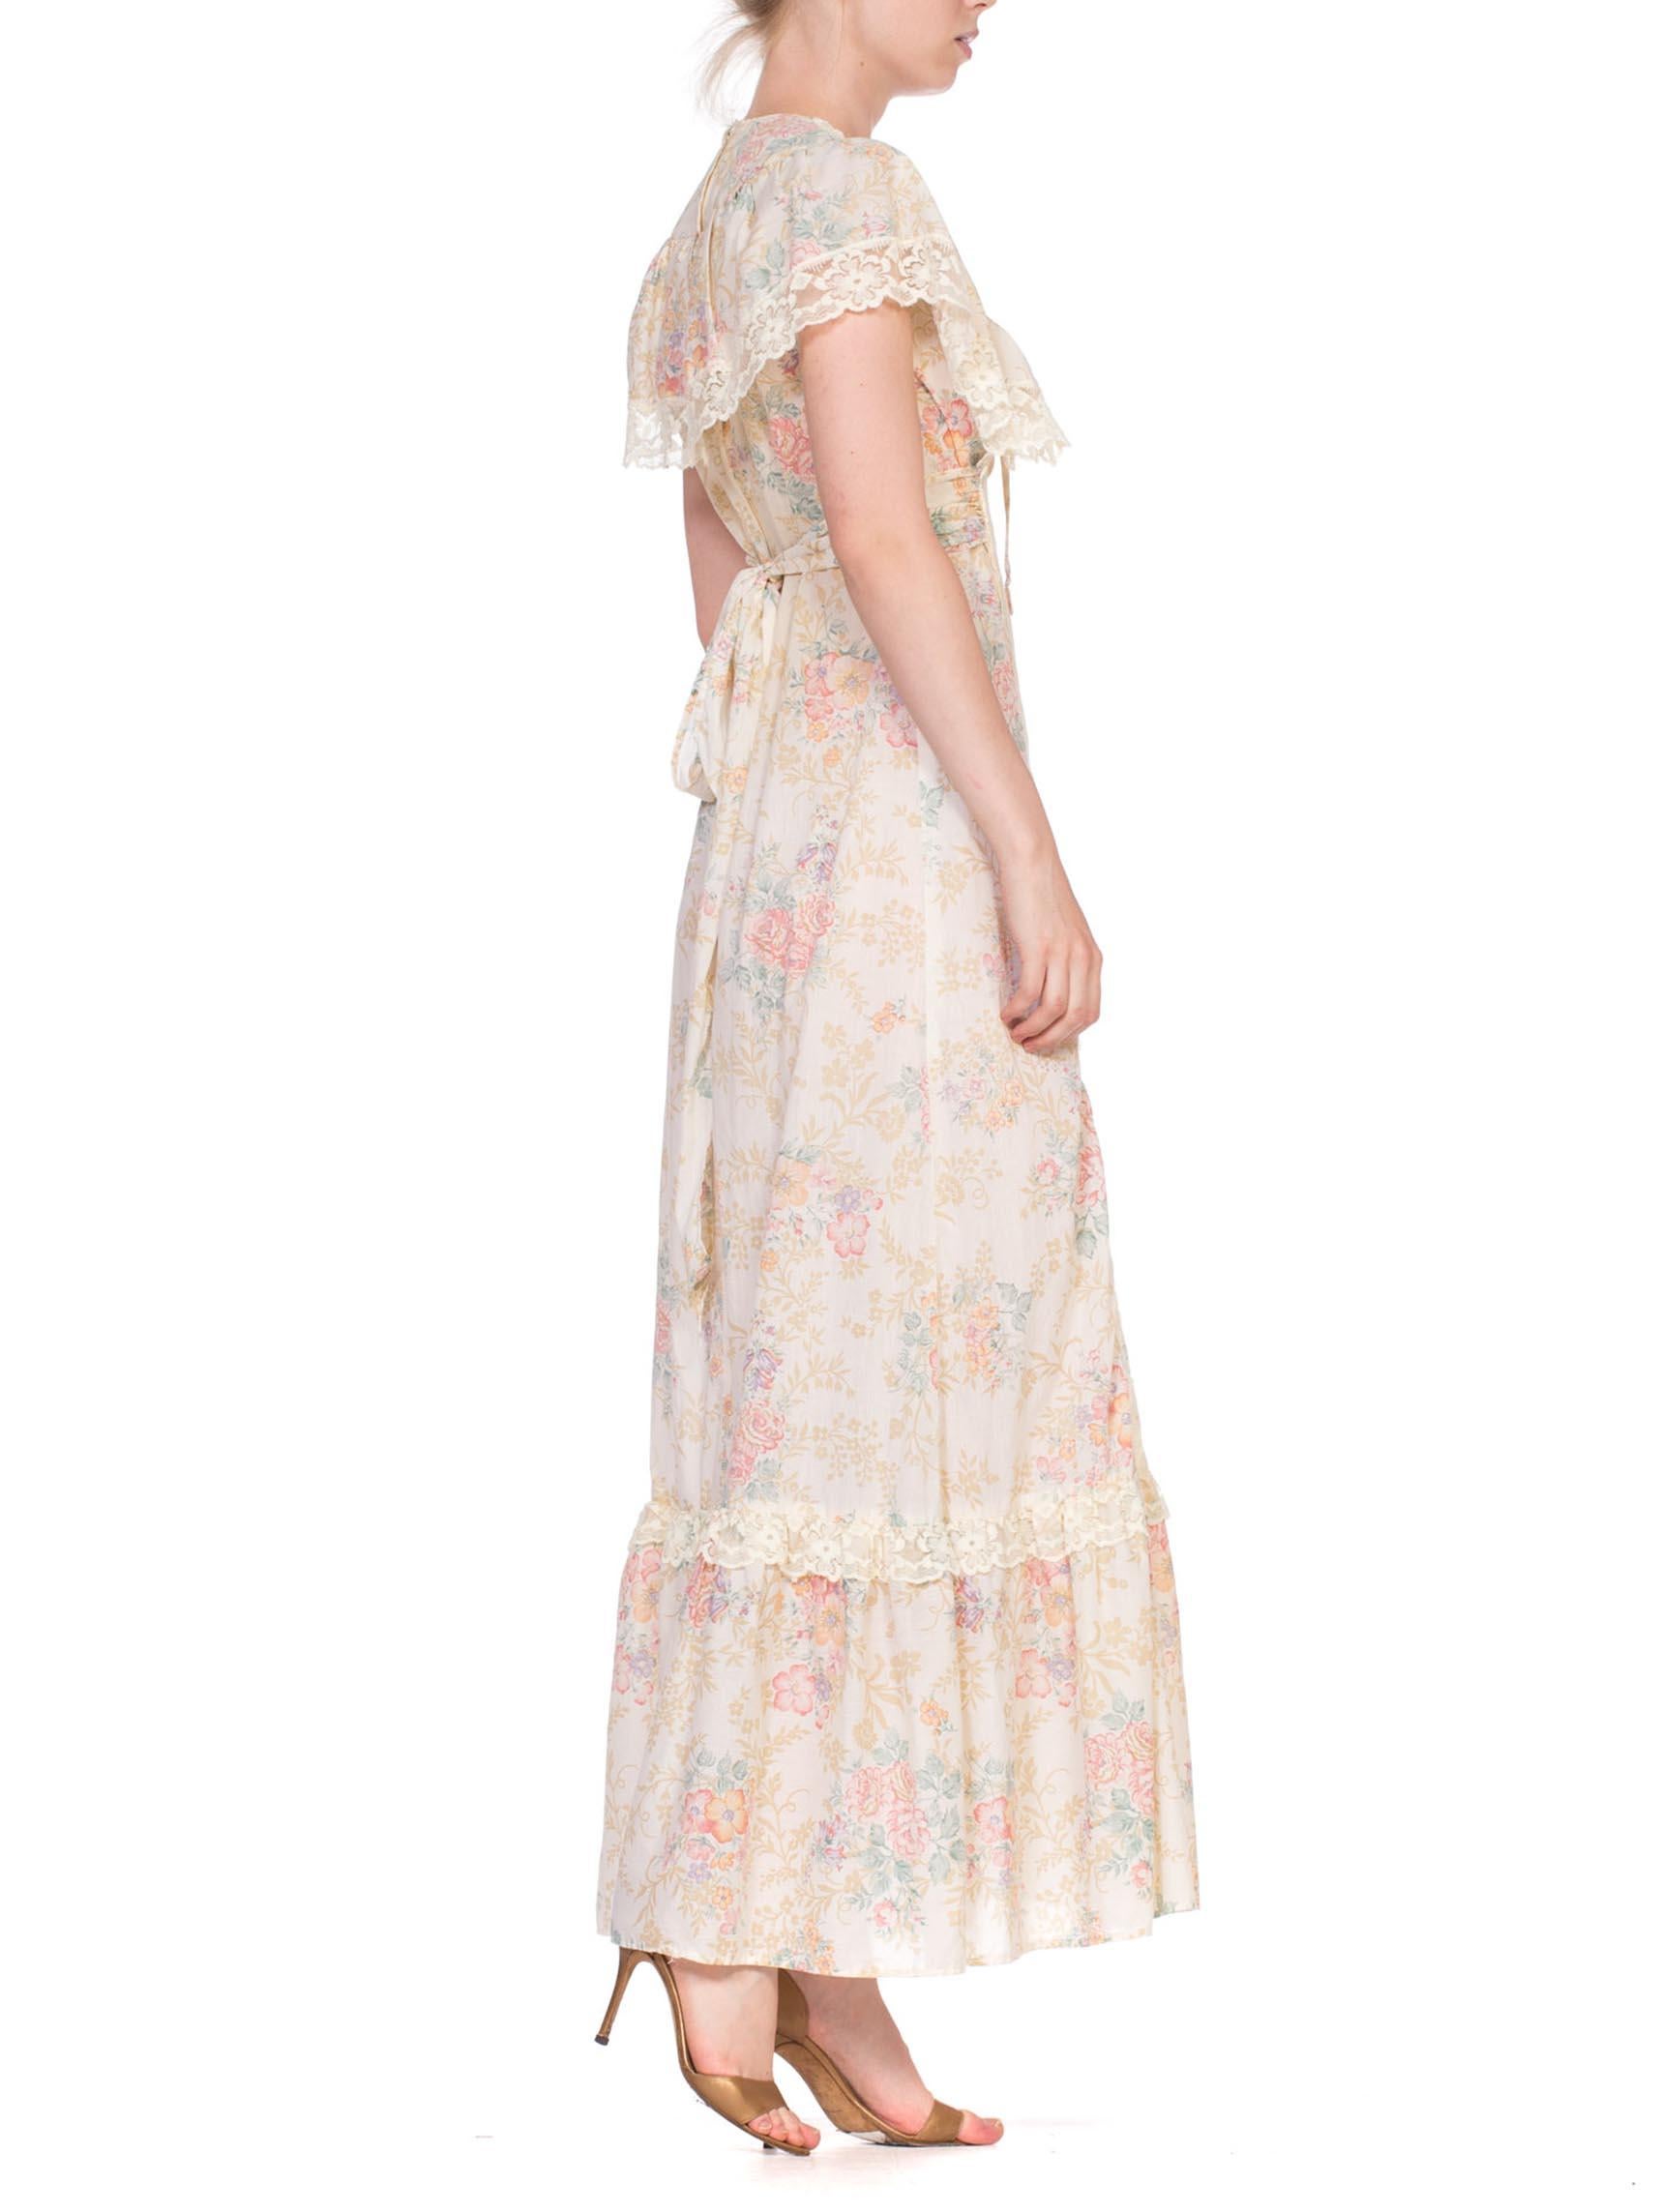 Beige 1970's Victorian Floral Cotton & Lace Dress